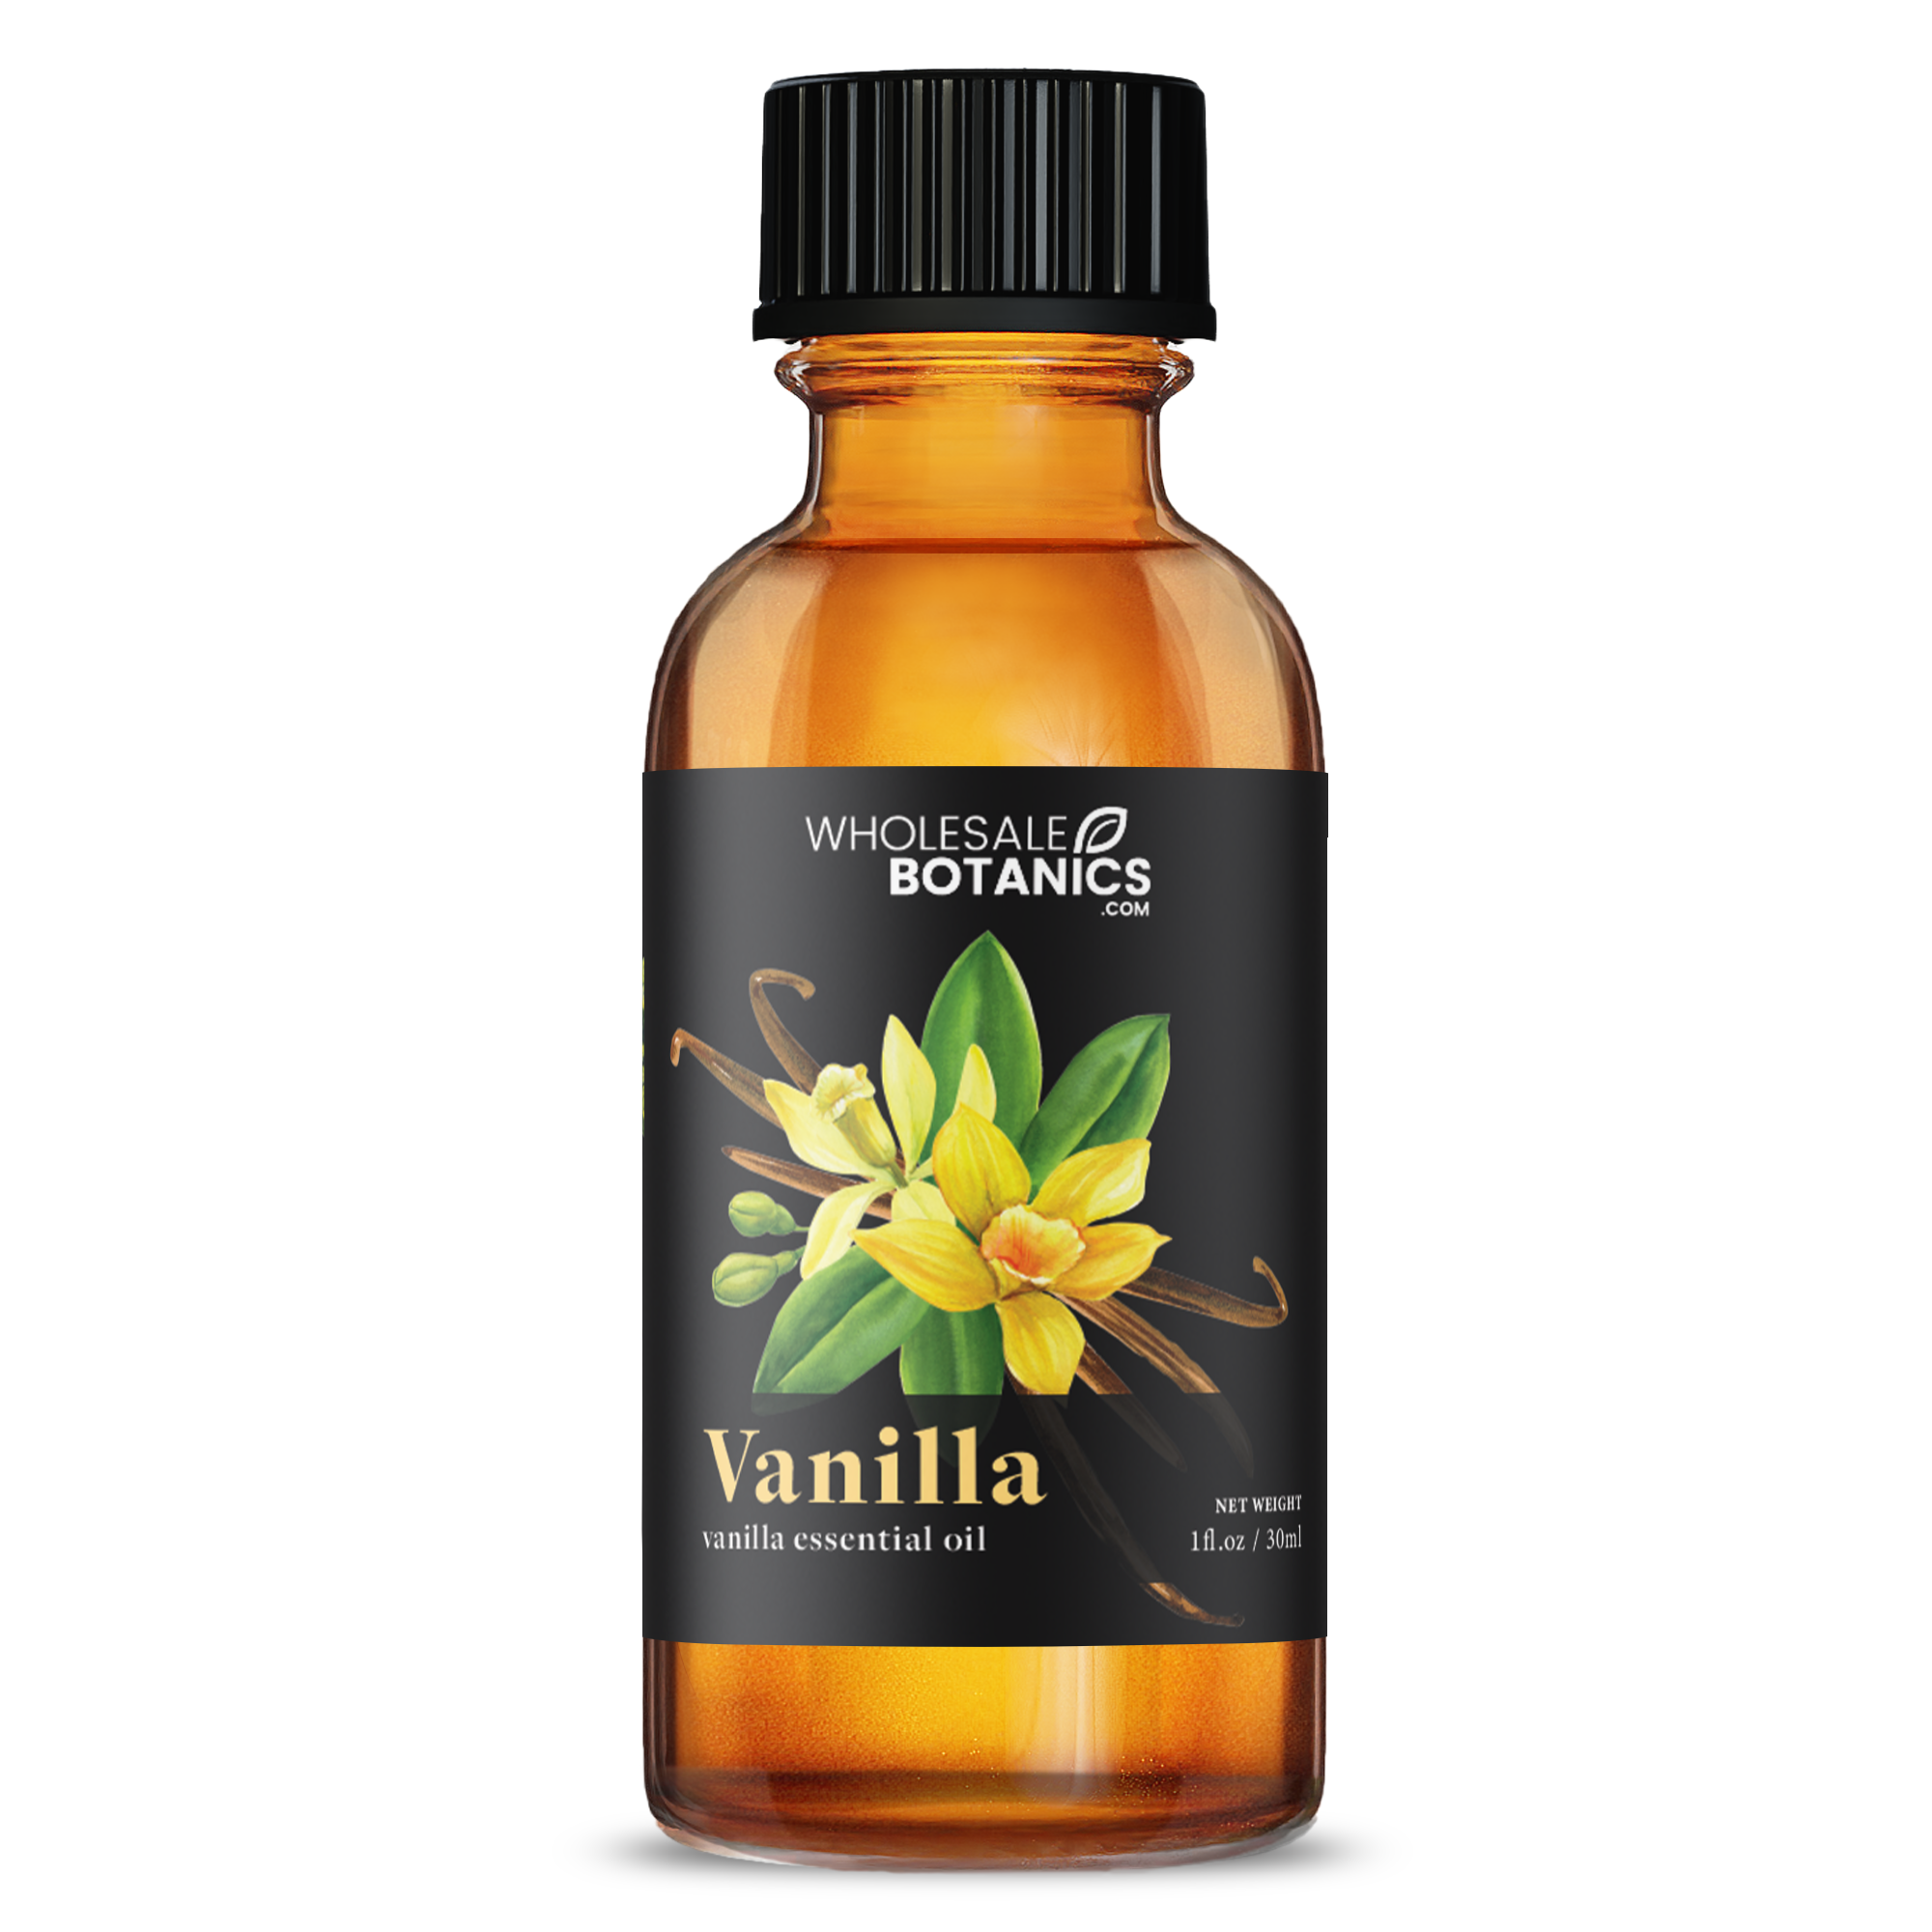 Vainilla (Vanilla)  Young Living Essential Oils